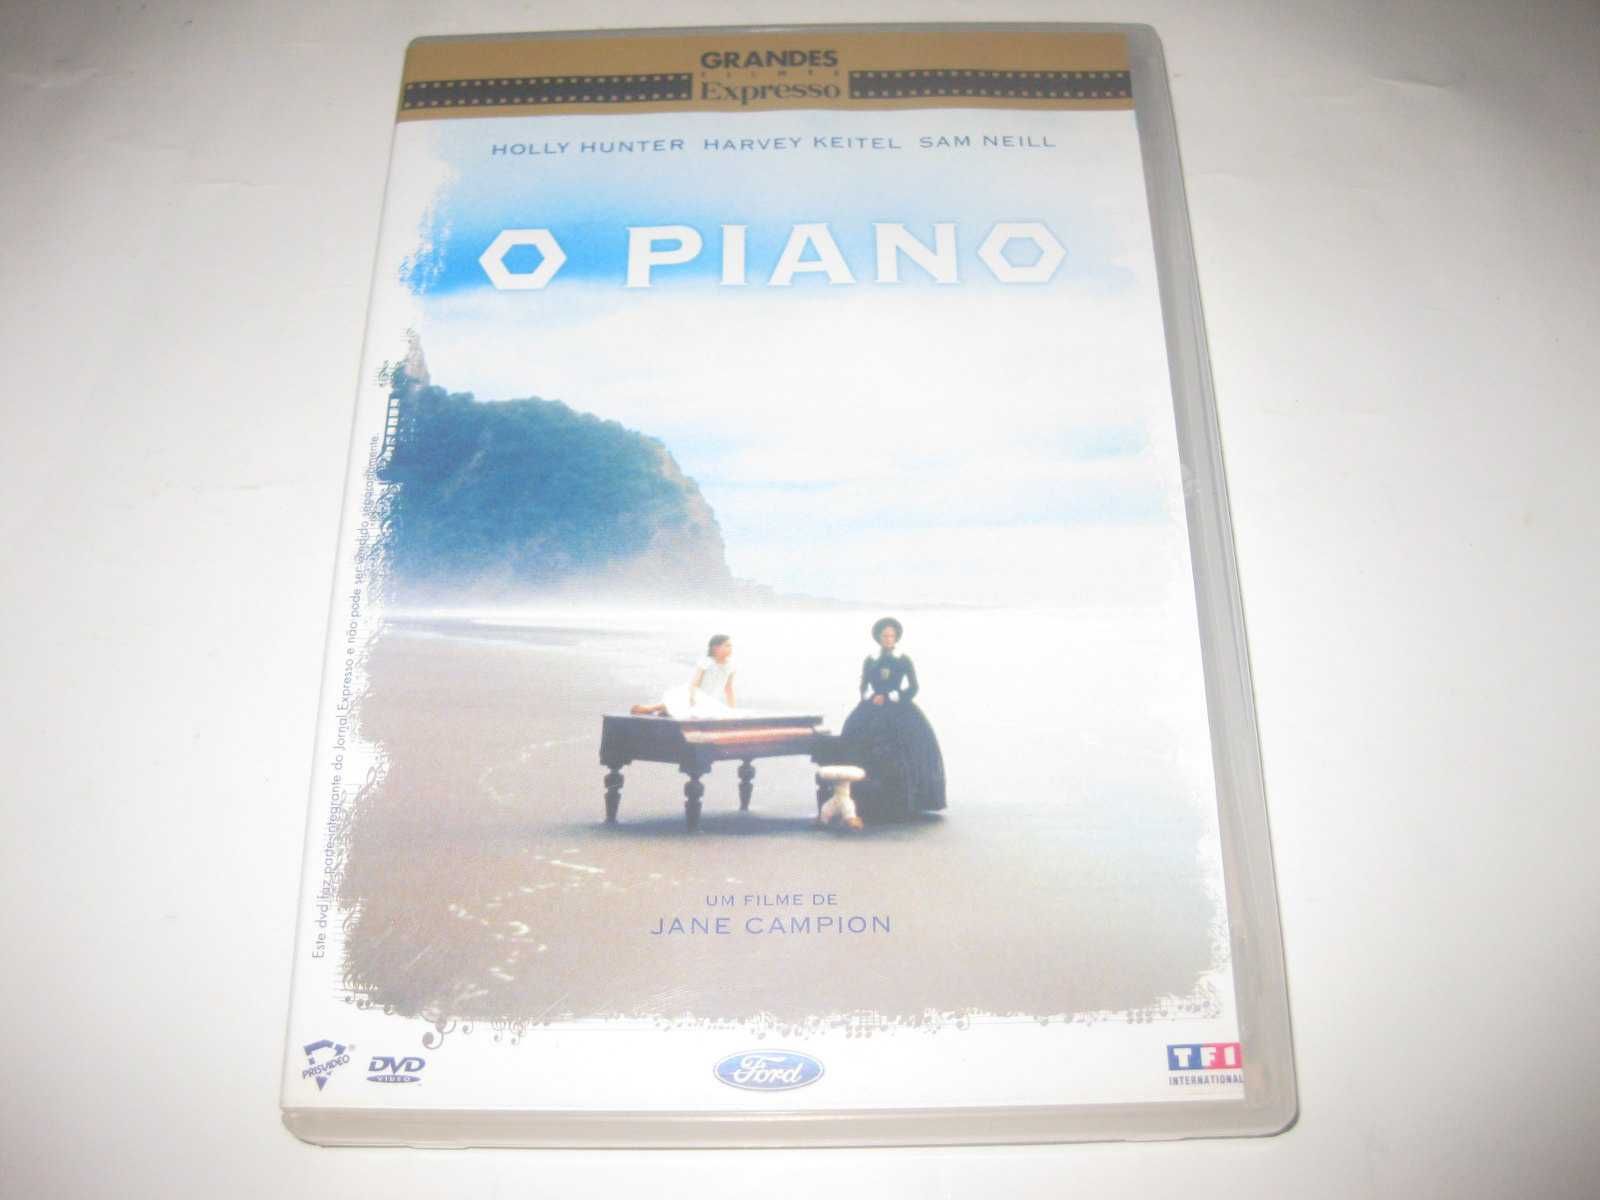 DVD "O Piano" com Holly Hunter